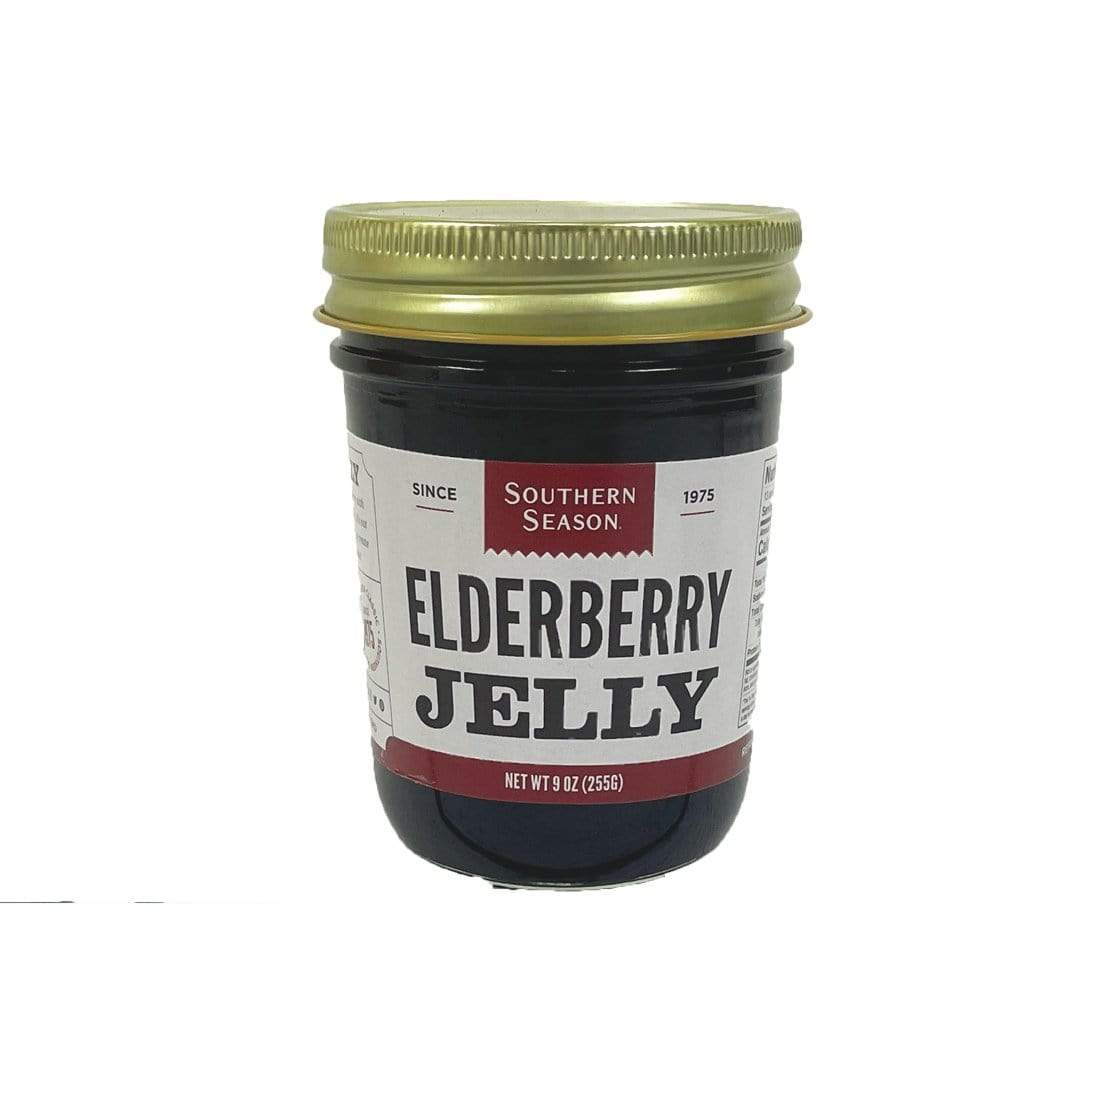 Southern Season Southern Season Elderberry Jelly 9 oz